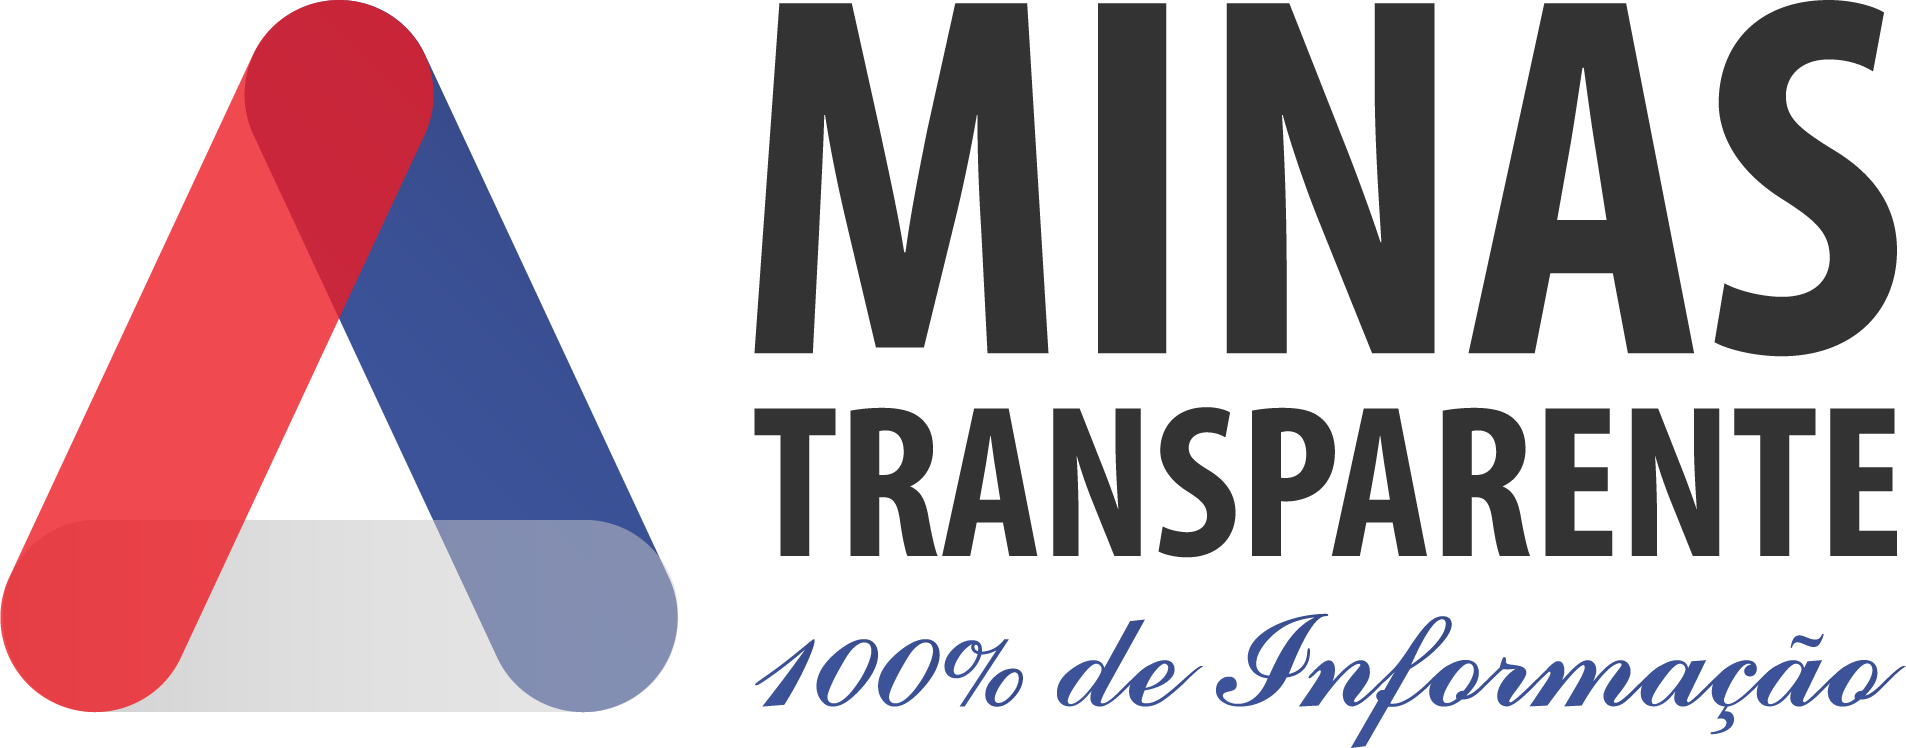 Logo_Minas transparente 300dpi